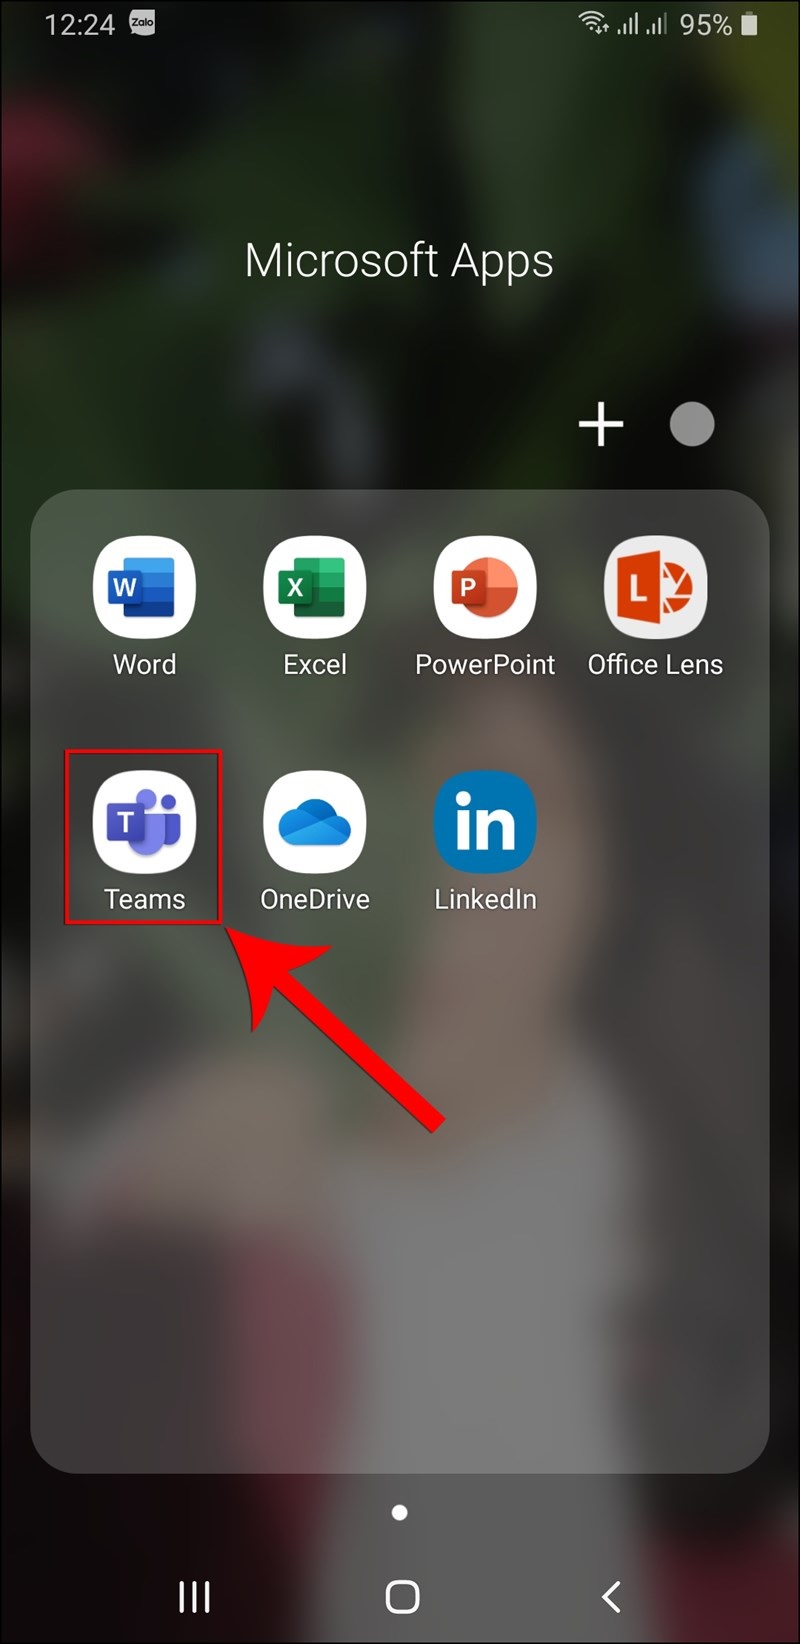 Cách tạo tham gia cuộc họp trên Microsoft Team bằng điện thoại